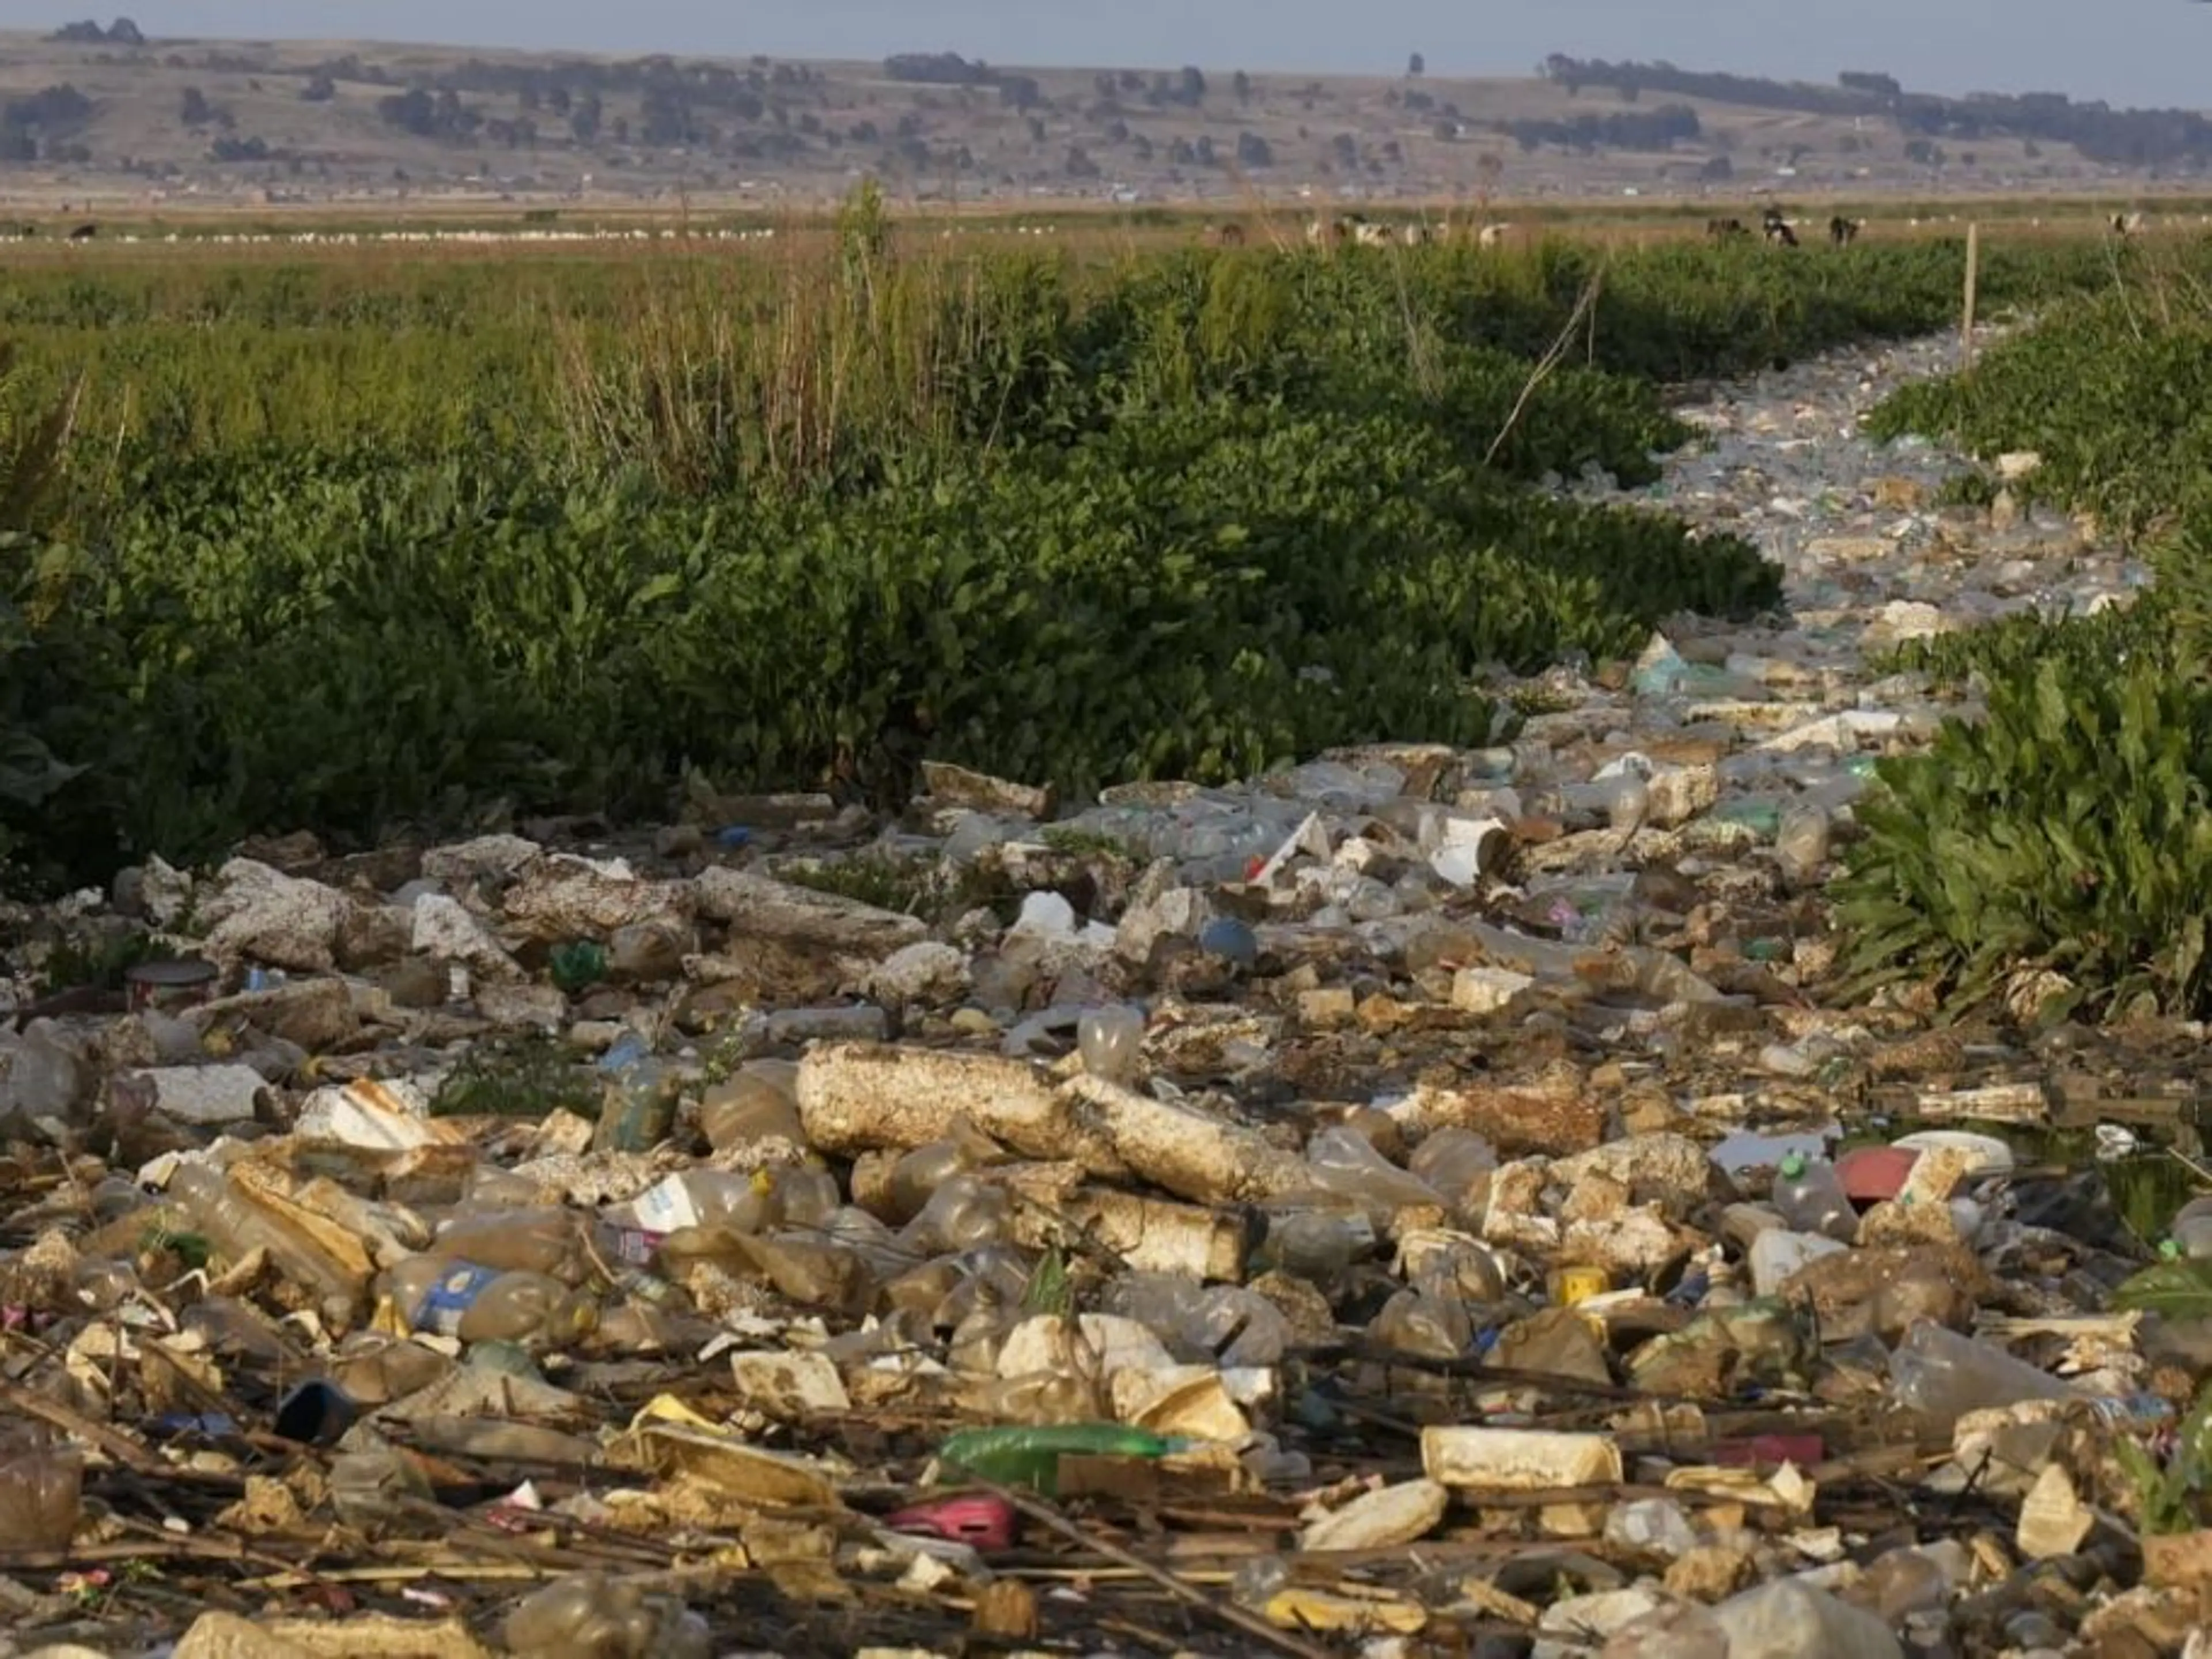 South America -Bolivia - plastic waste in the Katari River basin